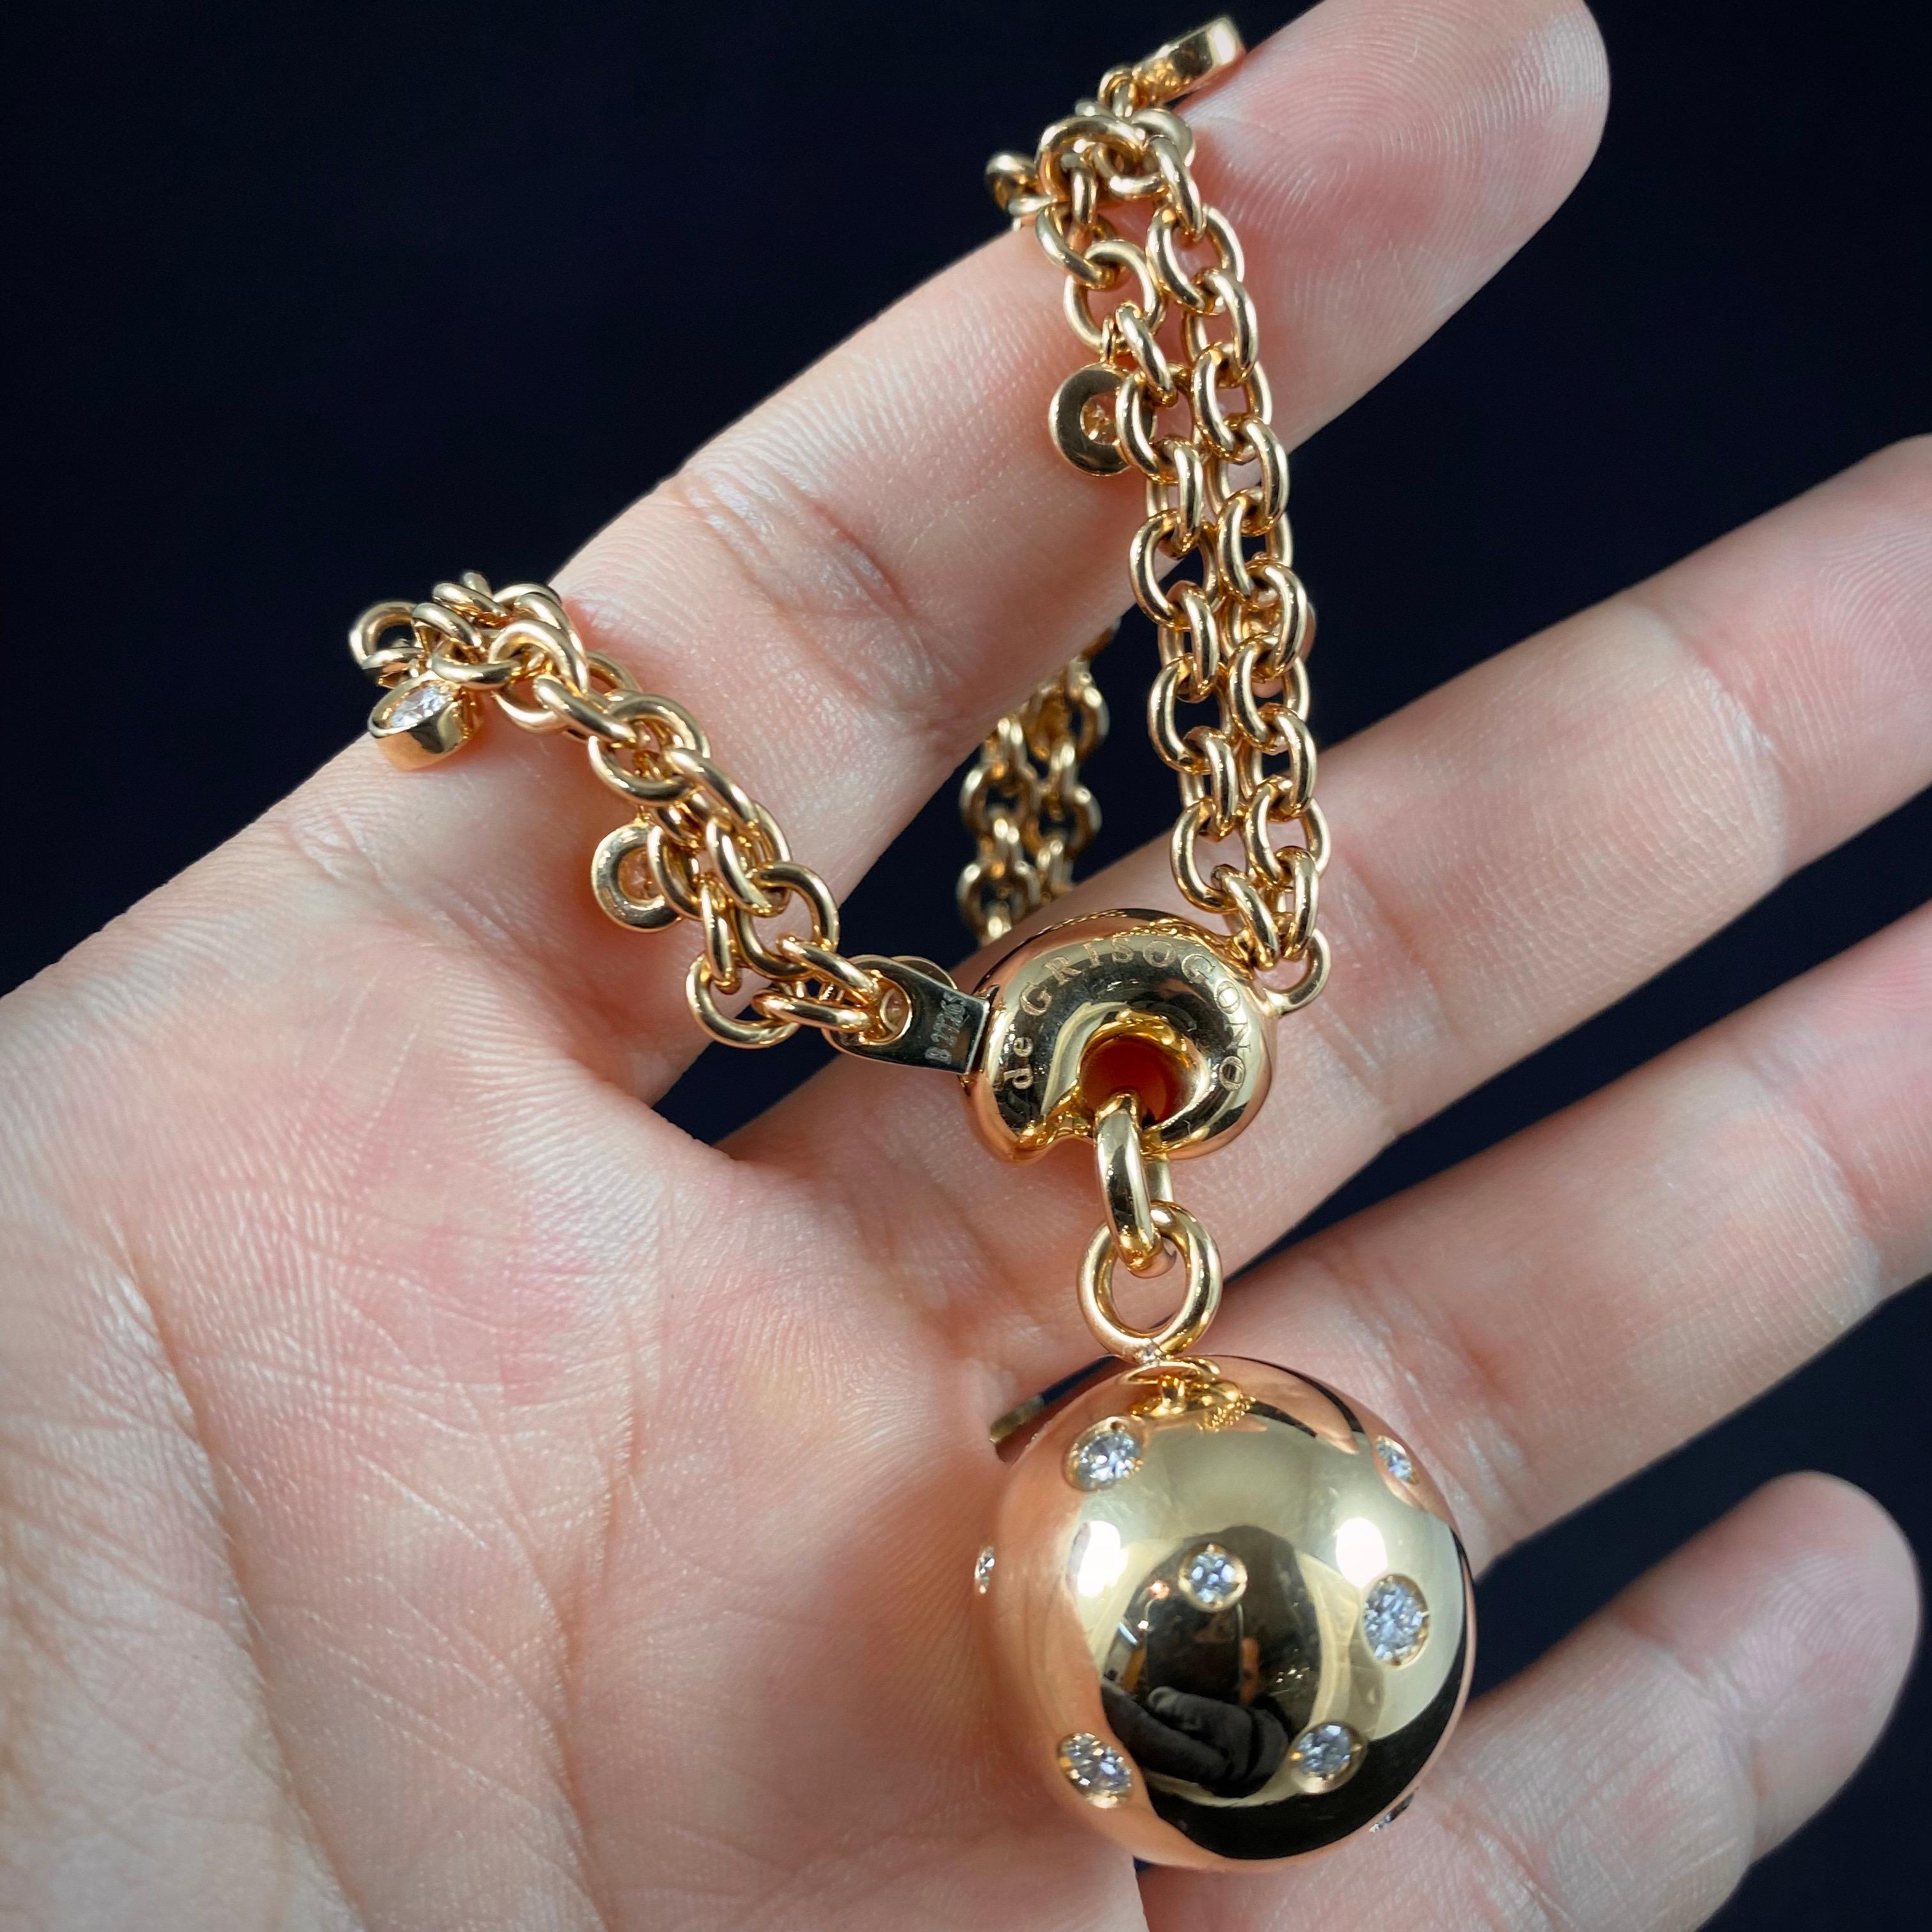 de GRISOGONO Round Brilliant Cut Diamond Boule Charm Pendant Necklace Rose Gold 1